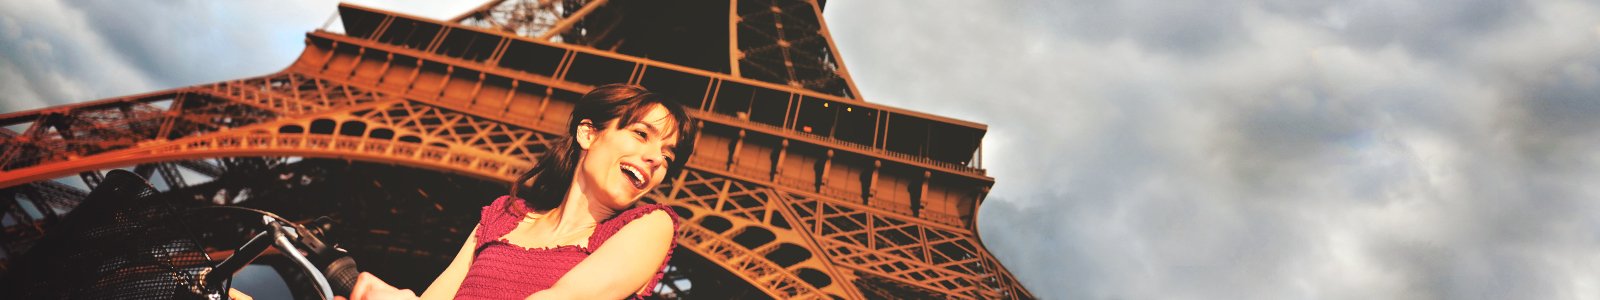 Eiffeltoren in Parijs © iStockphoto.com/EHStock